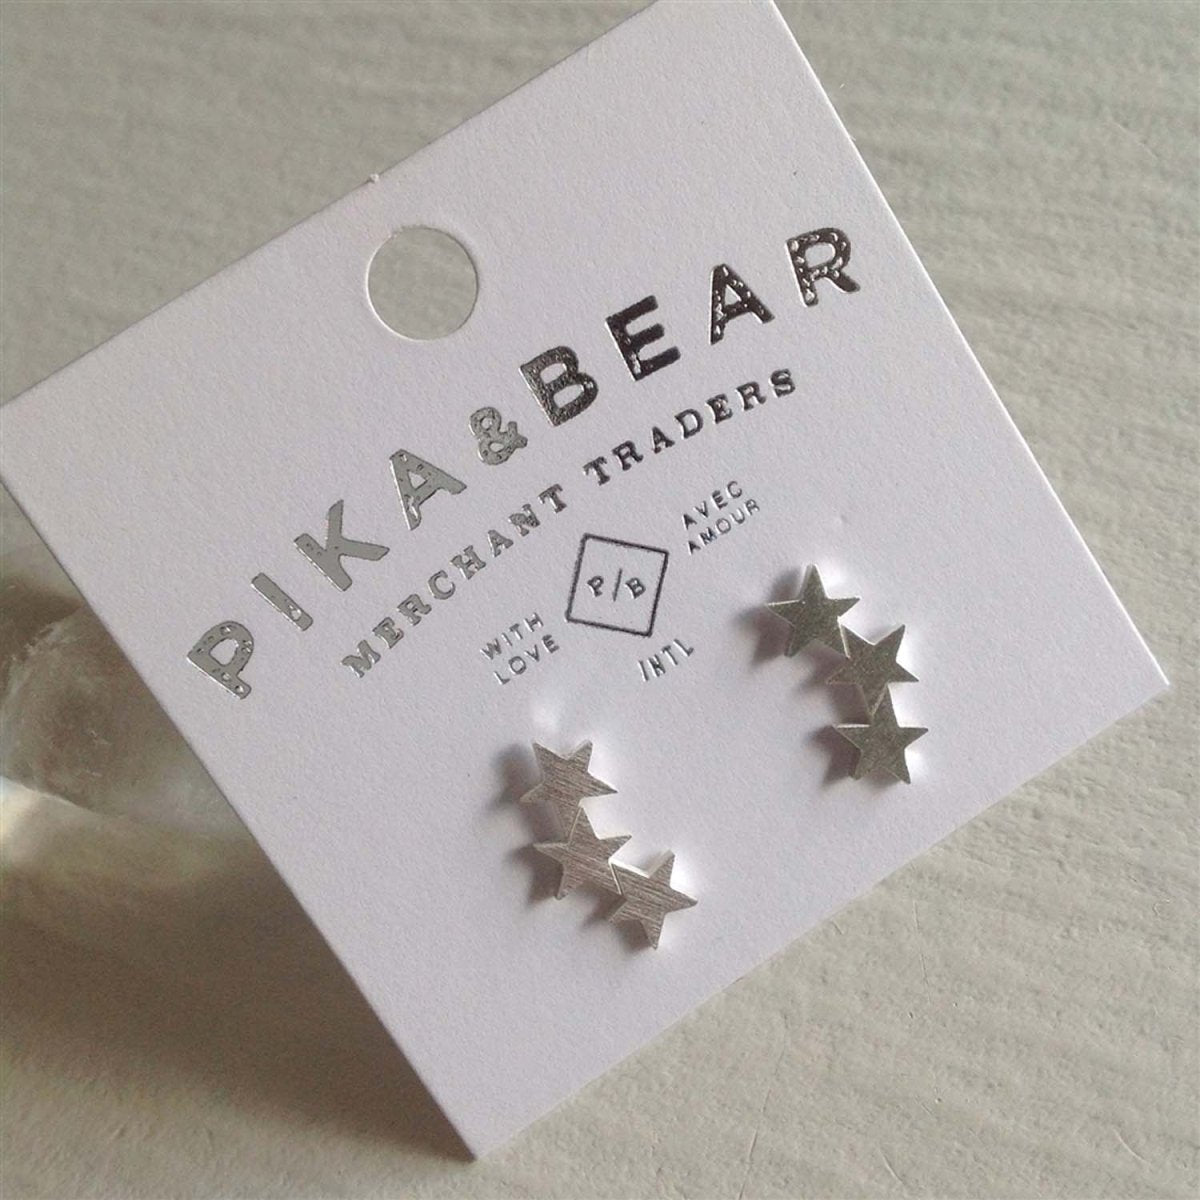 PIKA & BEAR 'ORION' STUD EARRINGS - jewellery - PIKA & BEAR